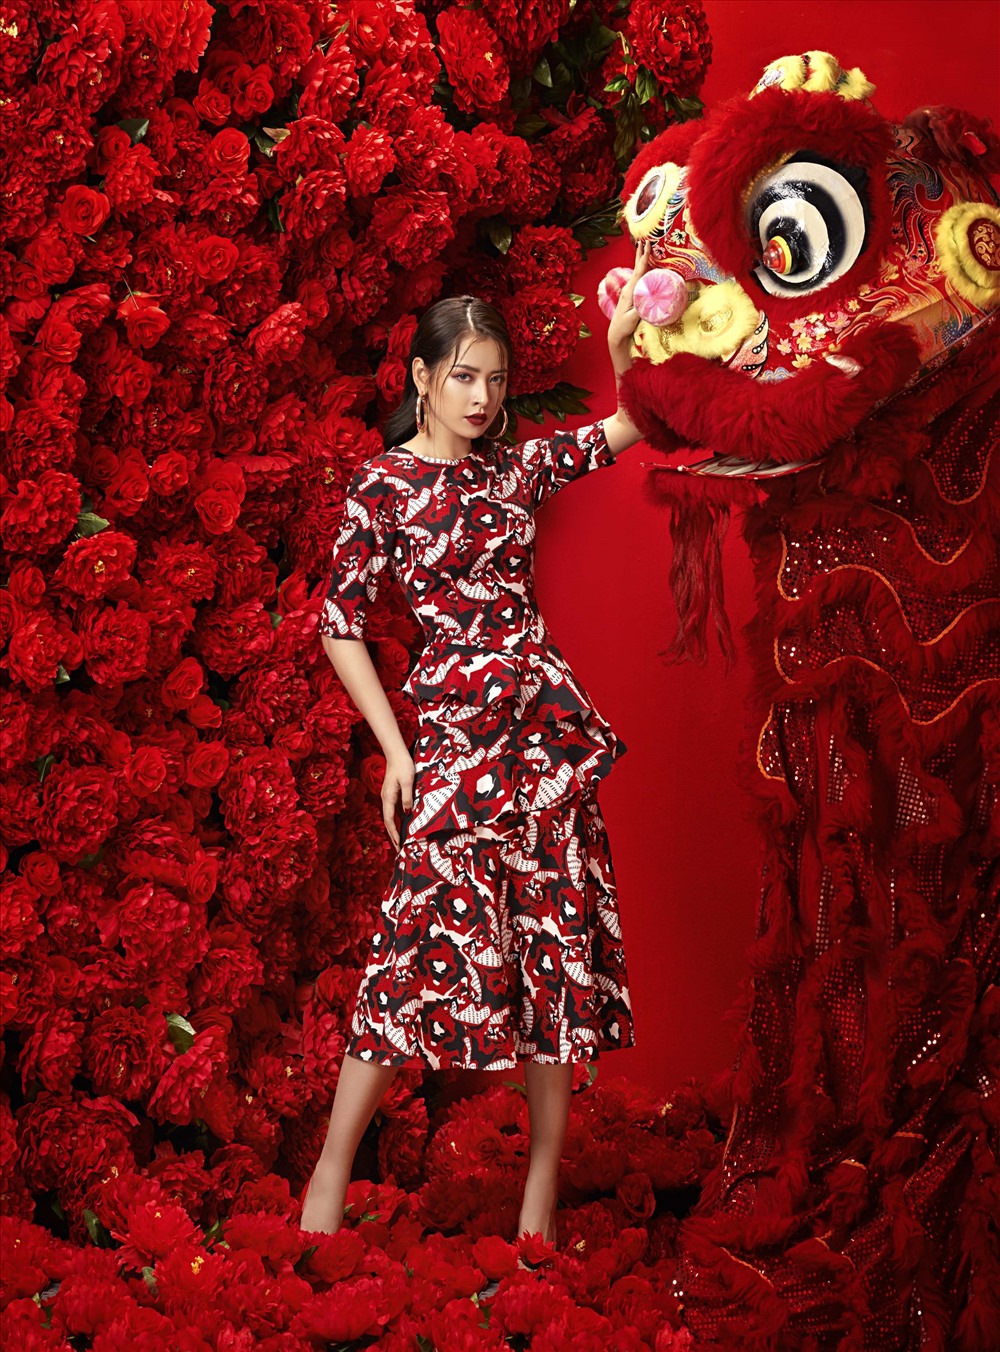 Để chào đón năm mới với nhiều dự định, Chi Pu đã thực hiện bộ ảnh với với phong cách cực ấn tượng, ngập tràn trong sắc đỏ, tượng trưng cho sự may mắn trong những ngày đầu năm